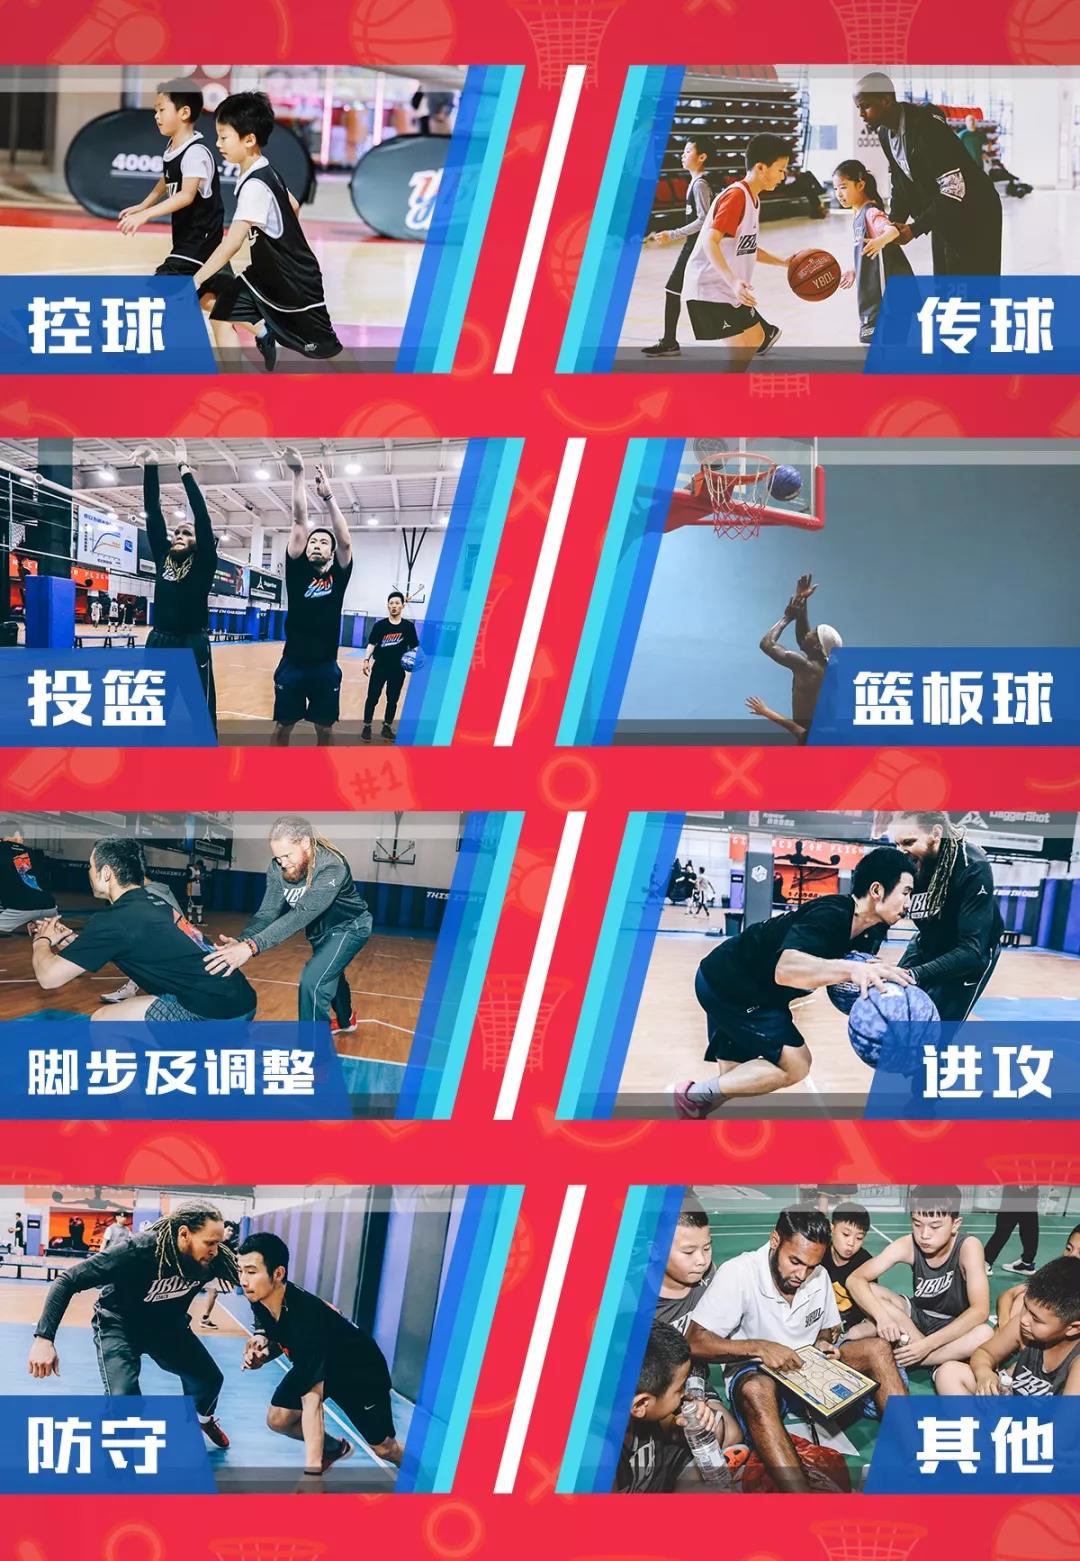 镇江YBDL纯美式深度篮球运动夏令营招生简章